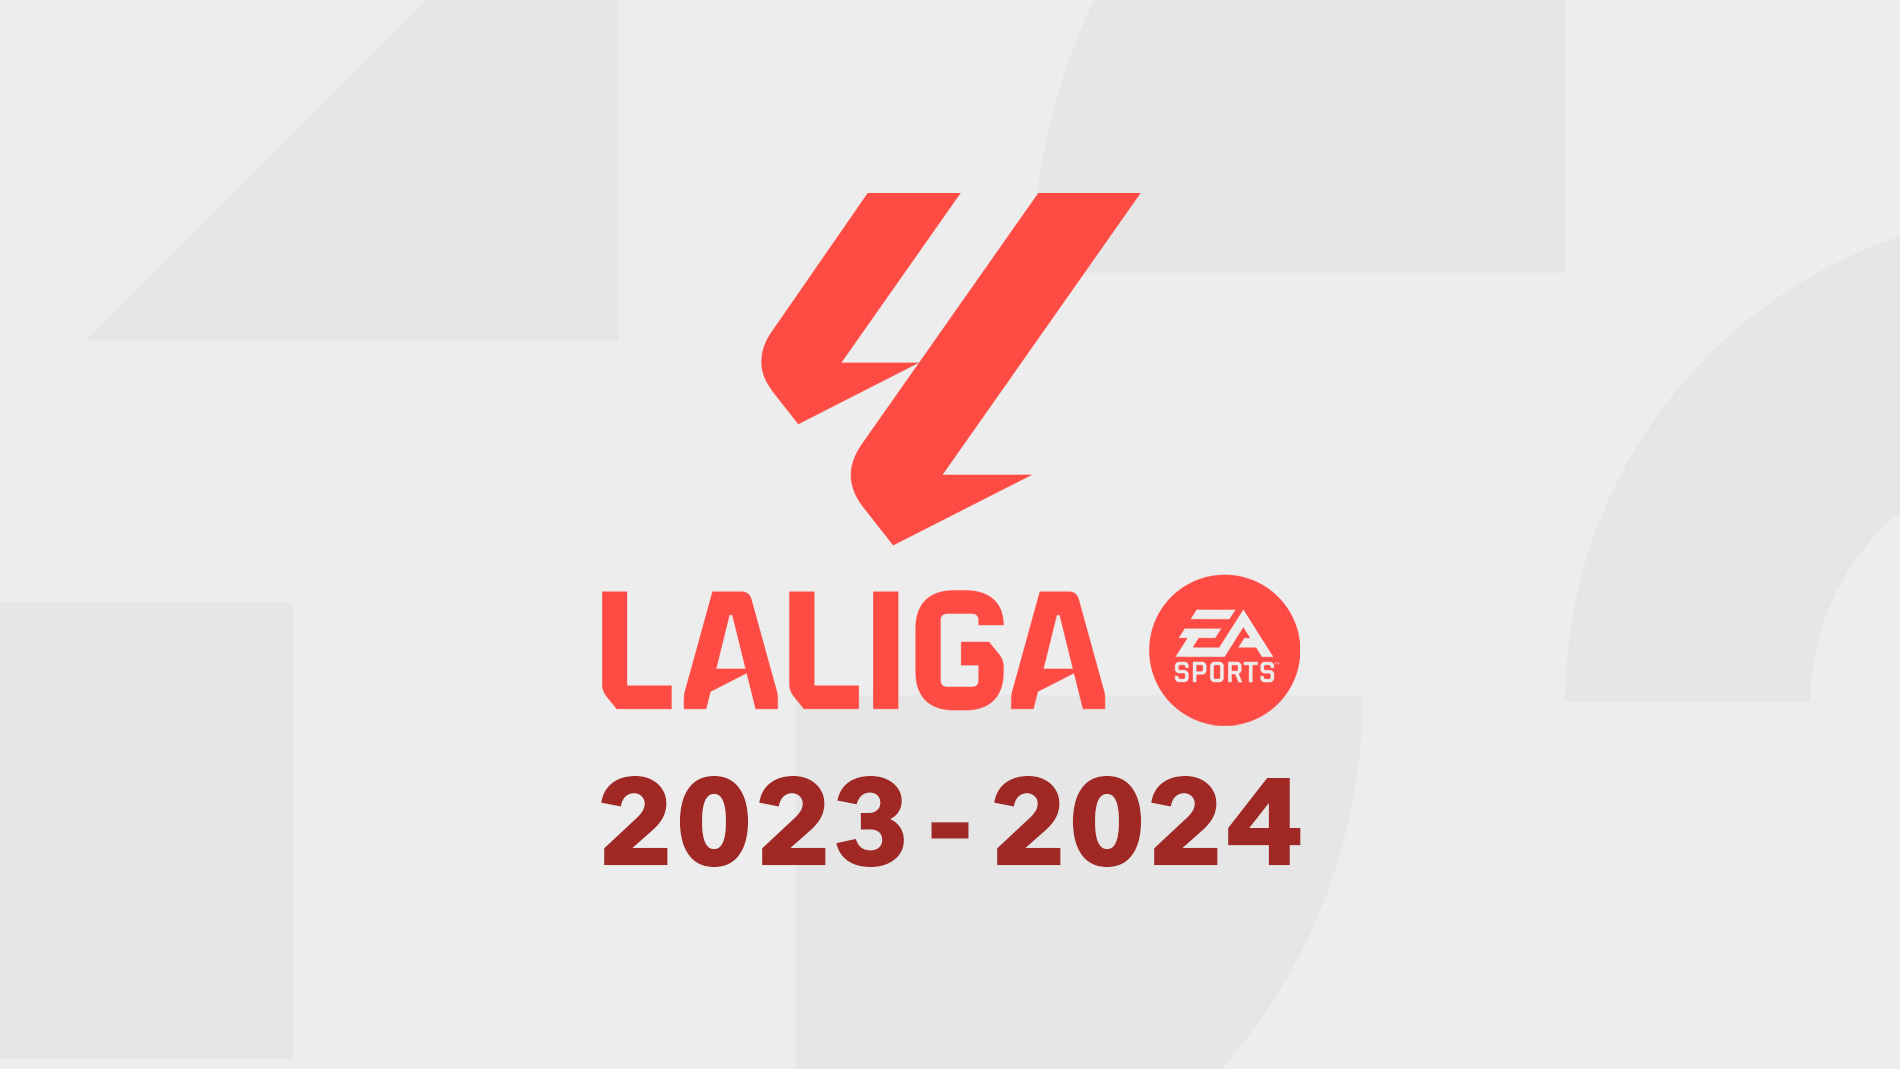 LaLiga 2023-2024